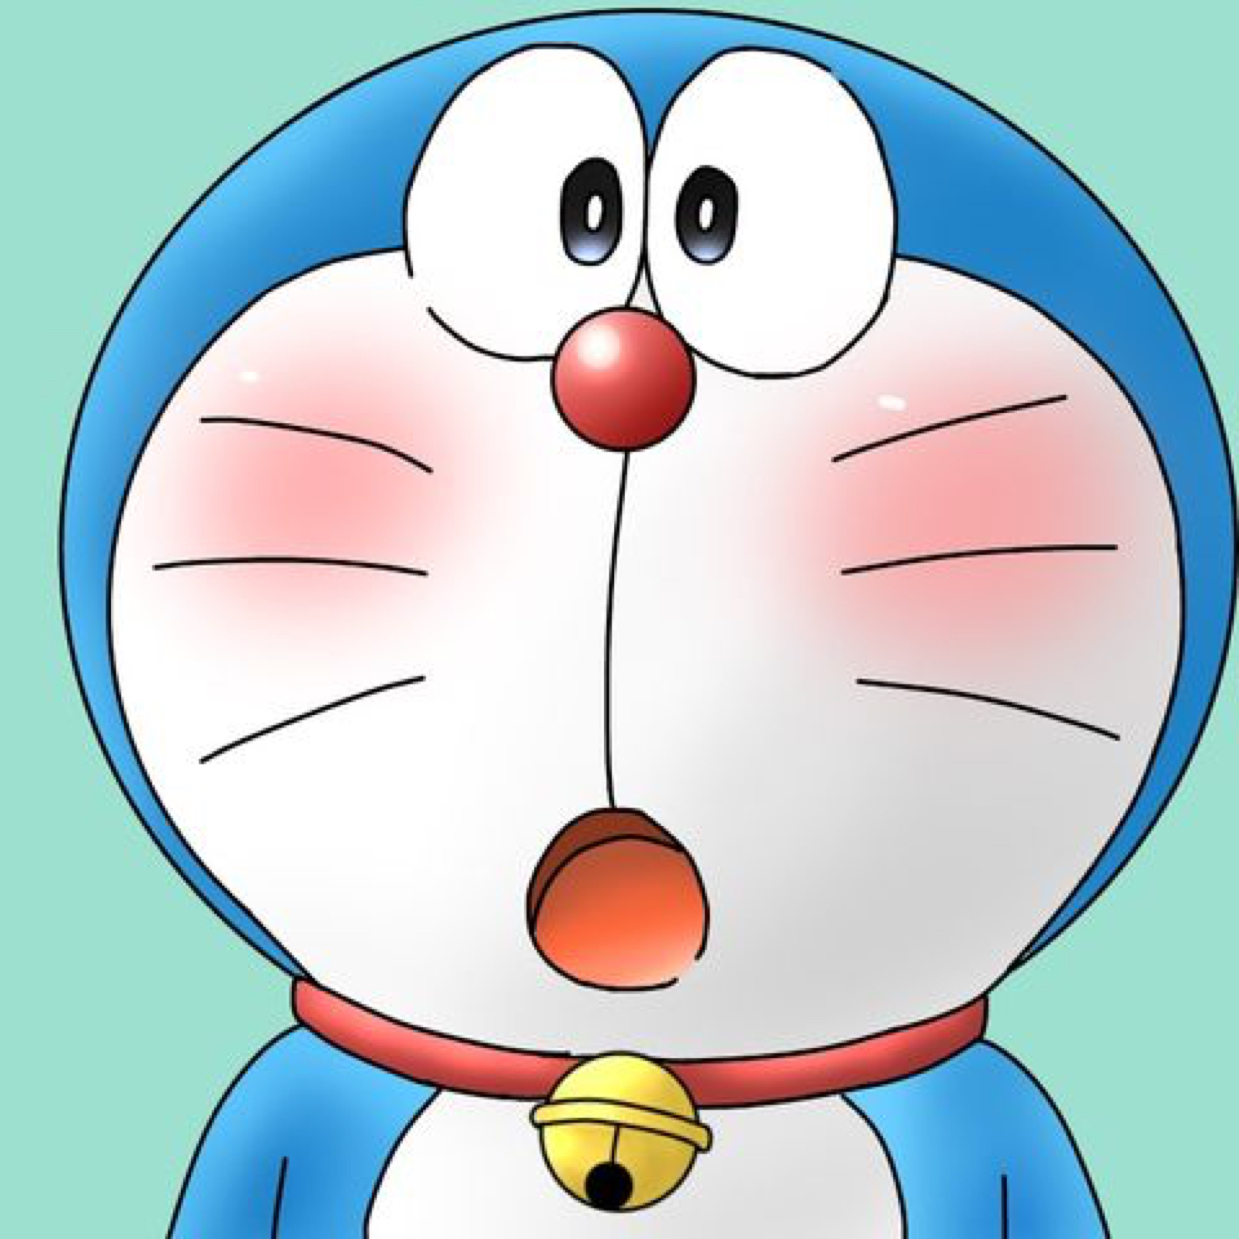 Hình ảnh avatar Doremon ngộ nghĩnh 2024: Với những hình ảnh avatar mới nhất của Doraemon, bạn sẽ được chiêm ngưỡng những cảnh tượng hài hước và thú vị của chú mèo robot từ tương lai. Chúng mang đến sự tươi mới, đầy màu sắc và không kém phần ngộ nghĩnh. Nếu bạn muốn có một bức ảnh đặc biệt để làm avatar, hãy truy cập ngay những hình ảnh avatar Doremon ngộ nghĩnh 2024!